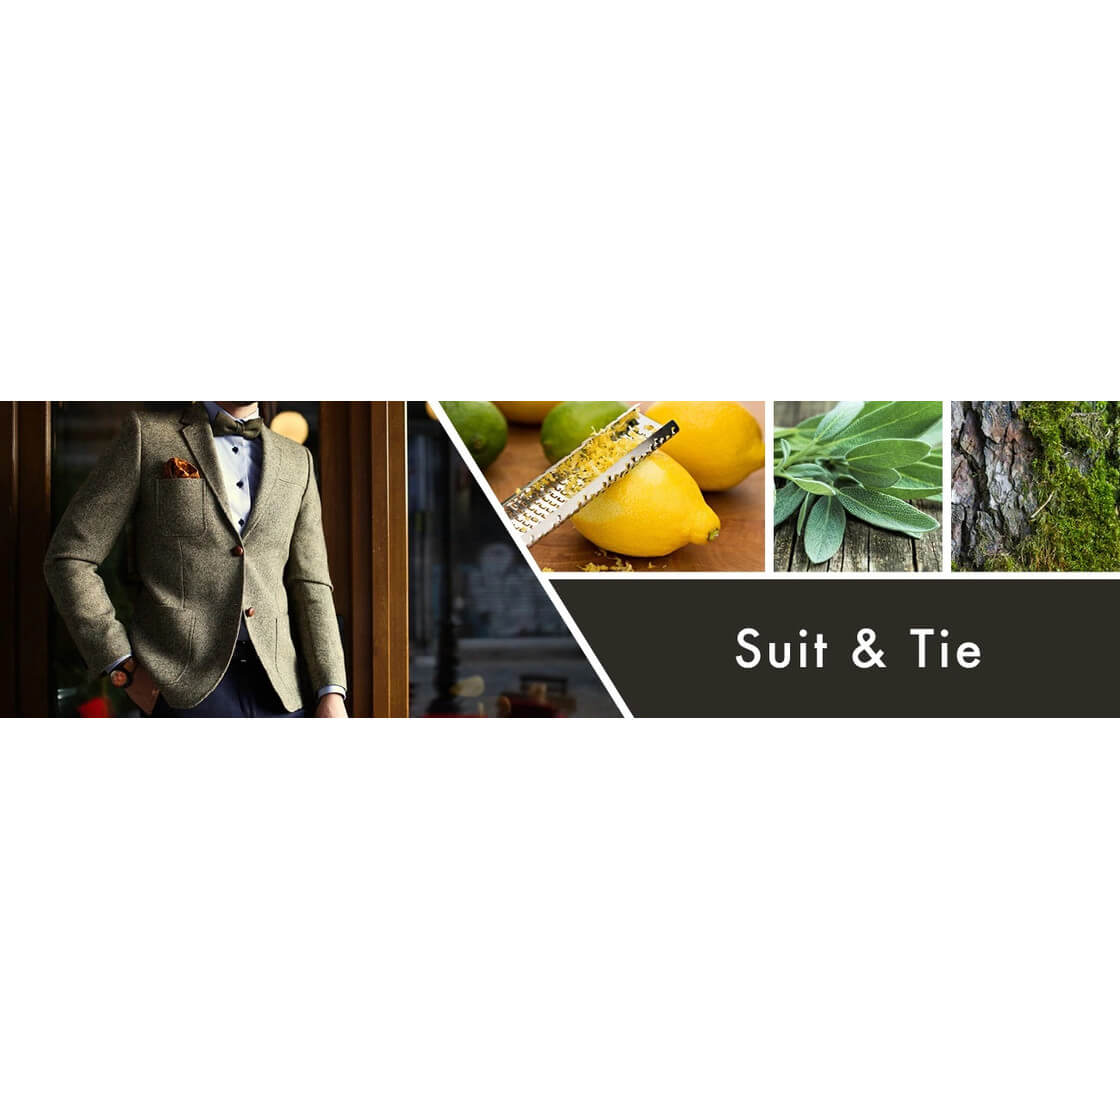 Suit & Tie 453g (Tumbler)